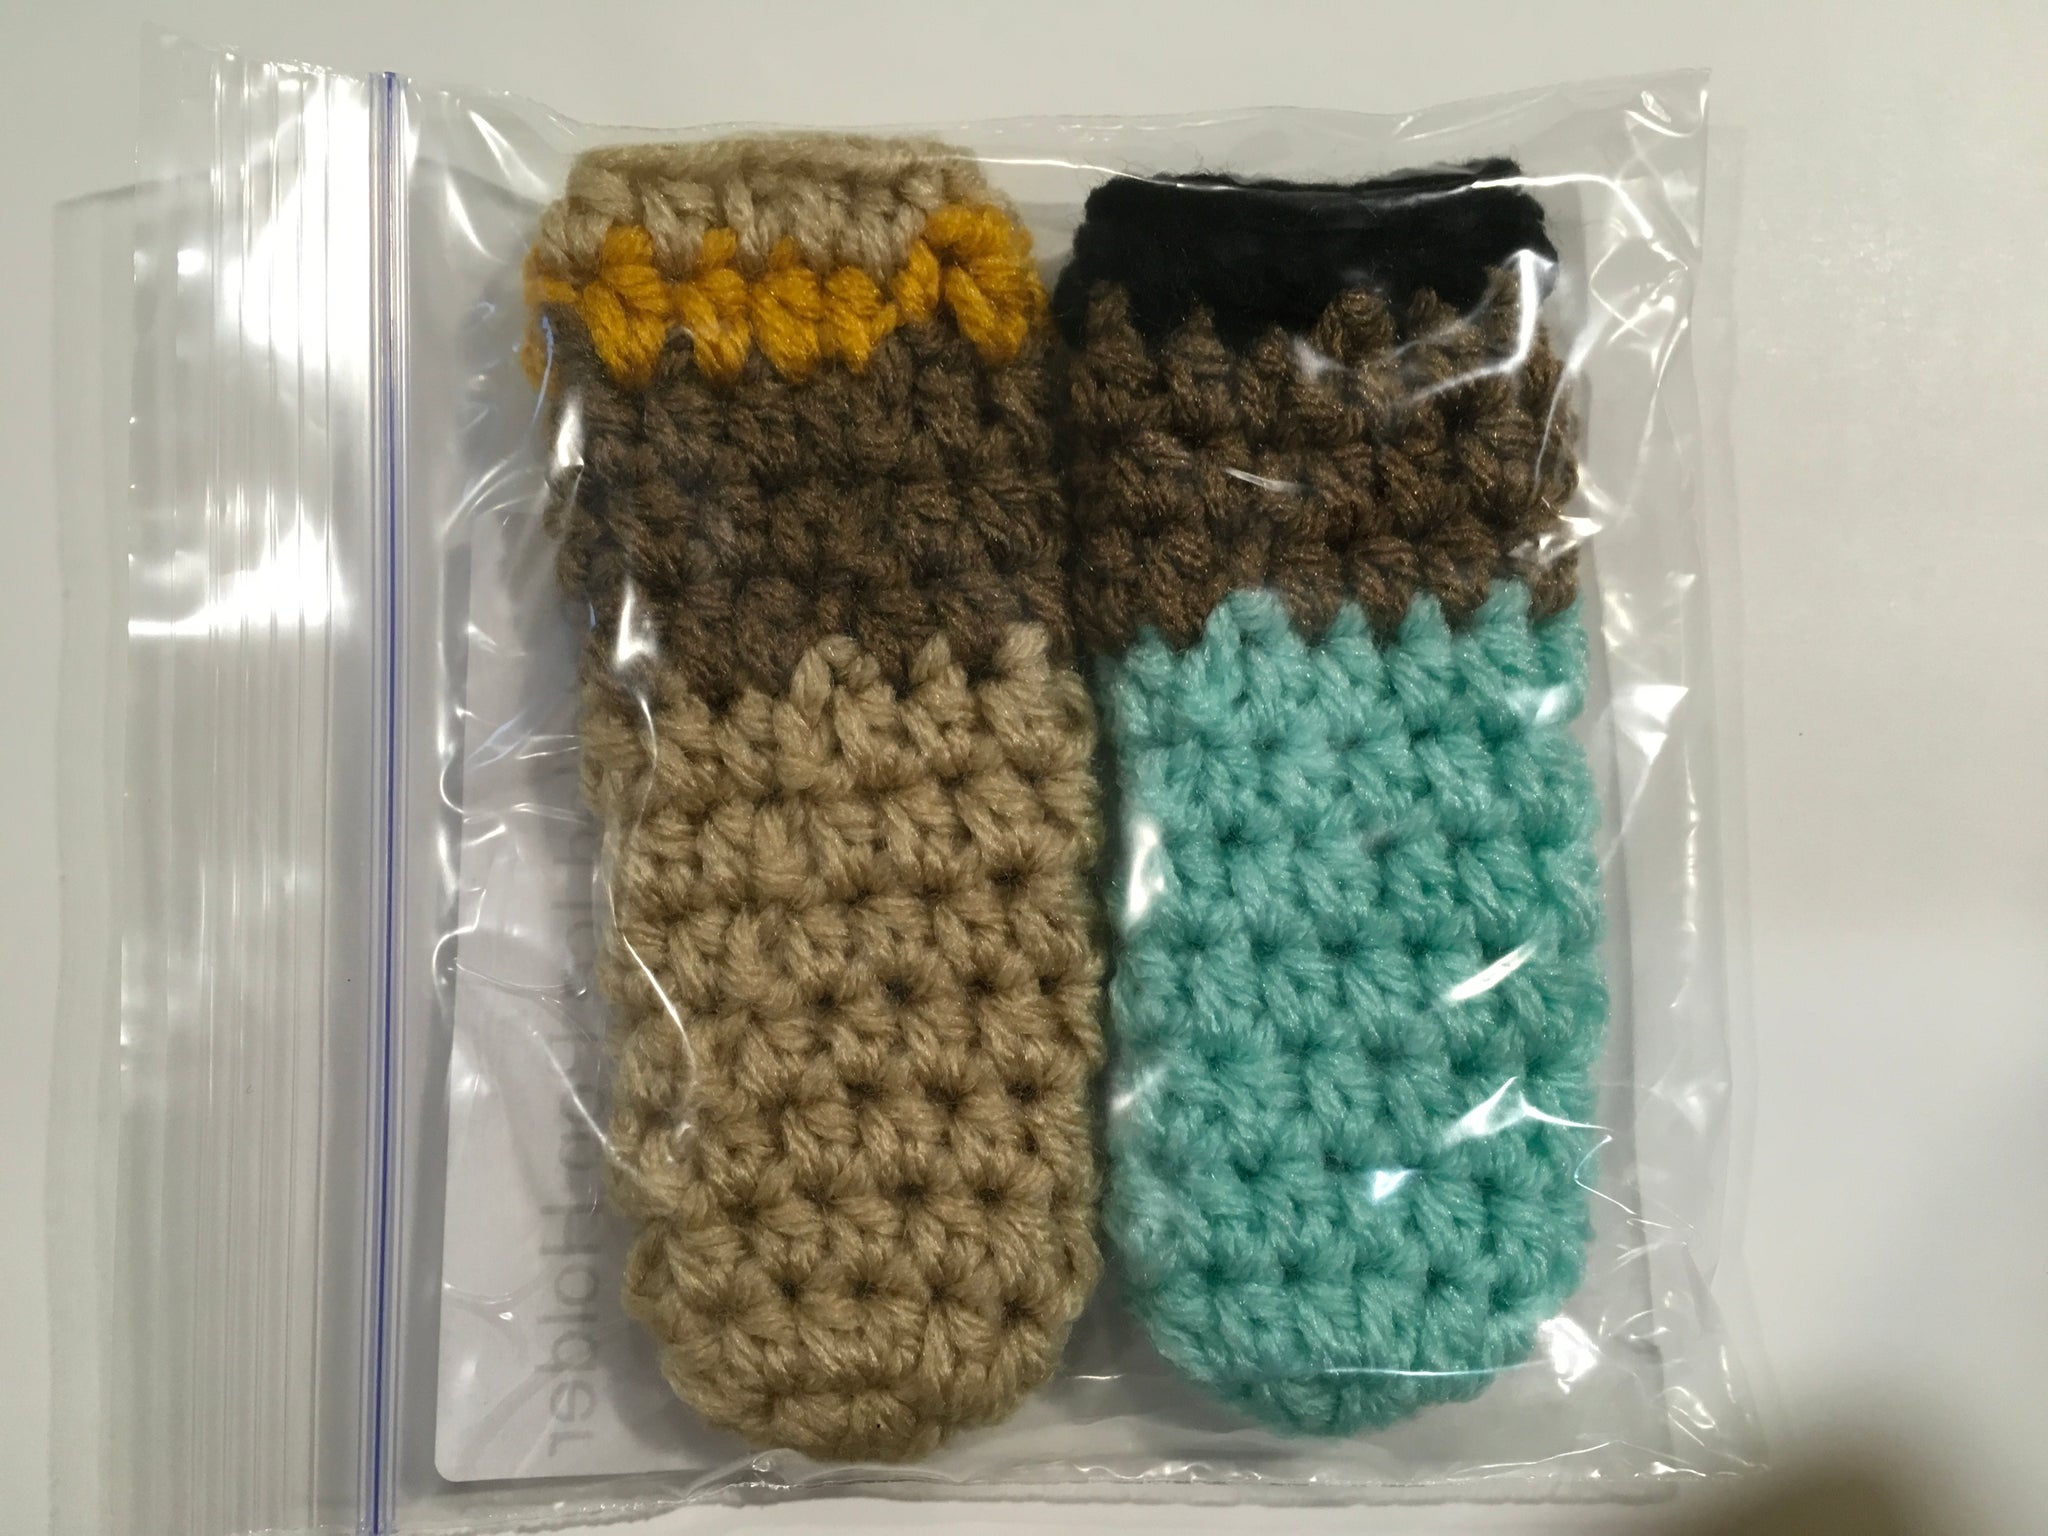 Wizard of Oz Socks — Pops de Milk - Fun and Nerdy Crochet Patterns